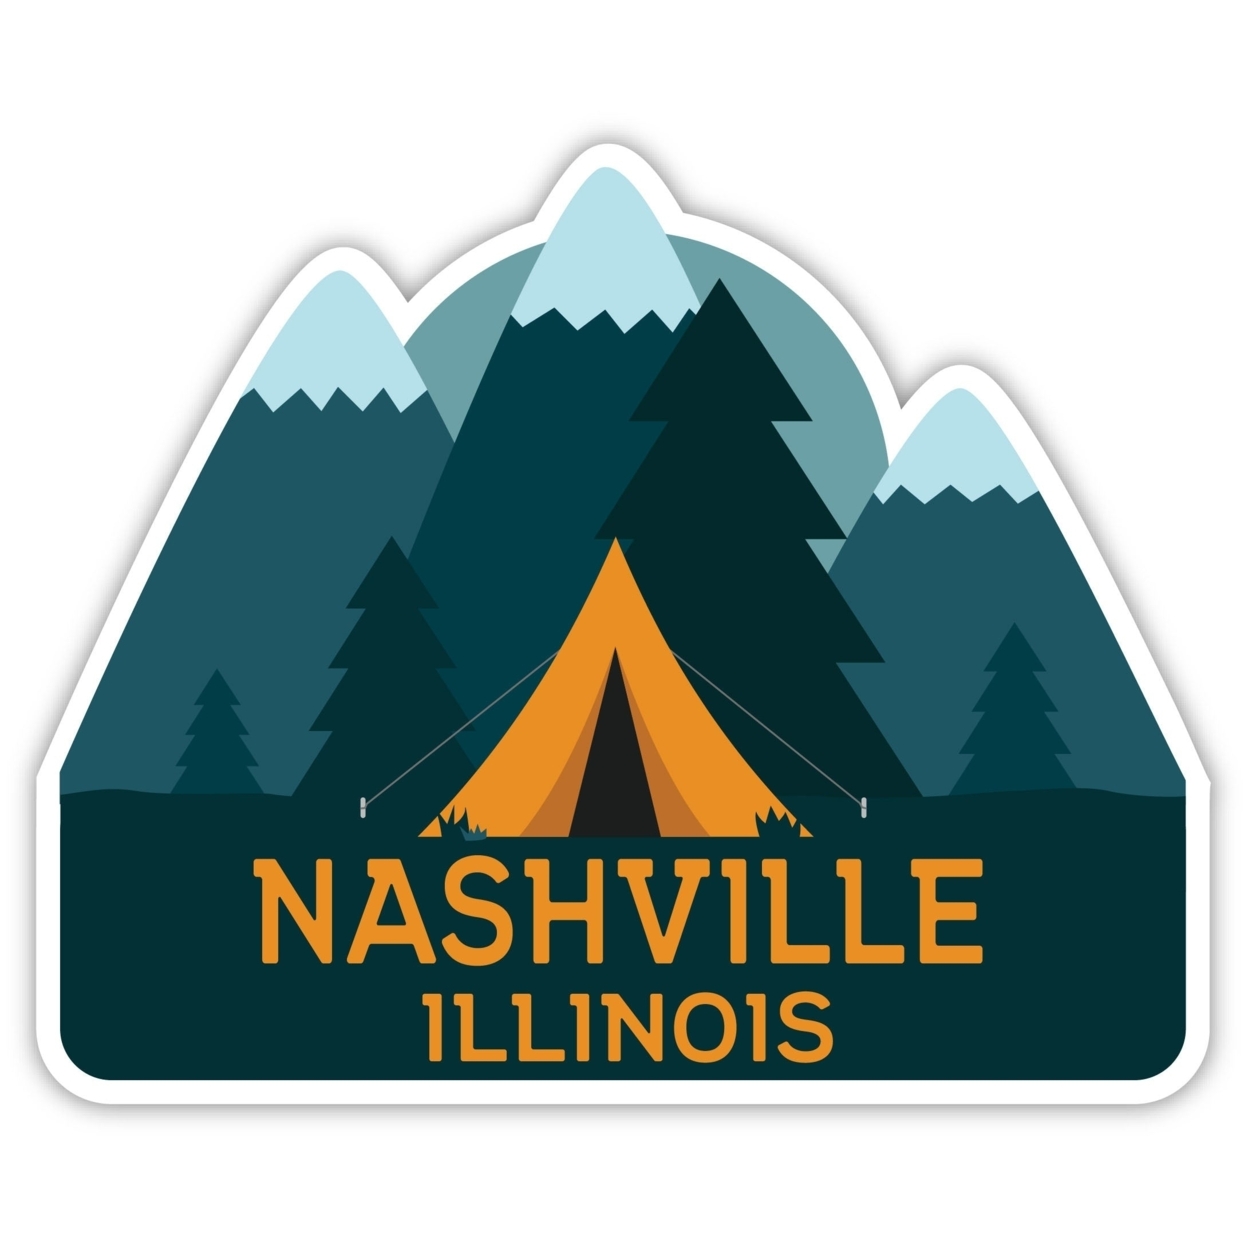 Nashville Illinois Souvenir Decorative Stickers (Choose Theme And Size) - Single Unit, 4-Inch, Tent